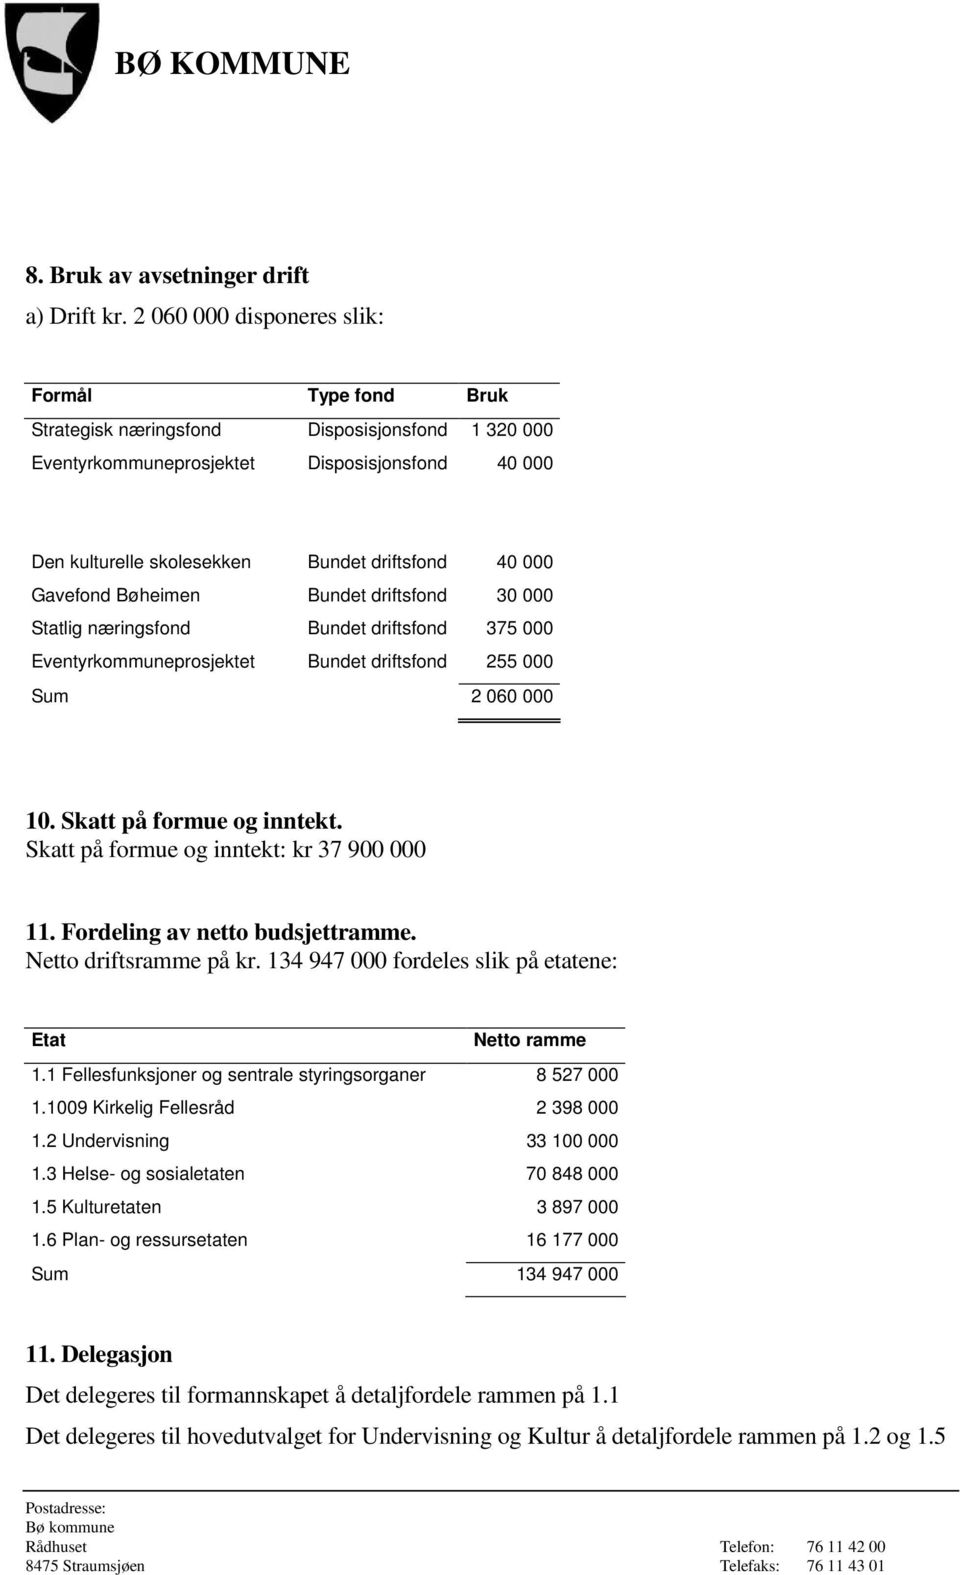 Gavefond Bøheimen Bundet driftsfond 30 000 Statlig næringsfond Bundet driftsfond 375 000 Eventyrkommuneprosjektet Bundet driftsfond 255 000 Sum 2 060 000 10. Skatt på formue og inntekt.